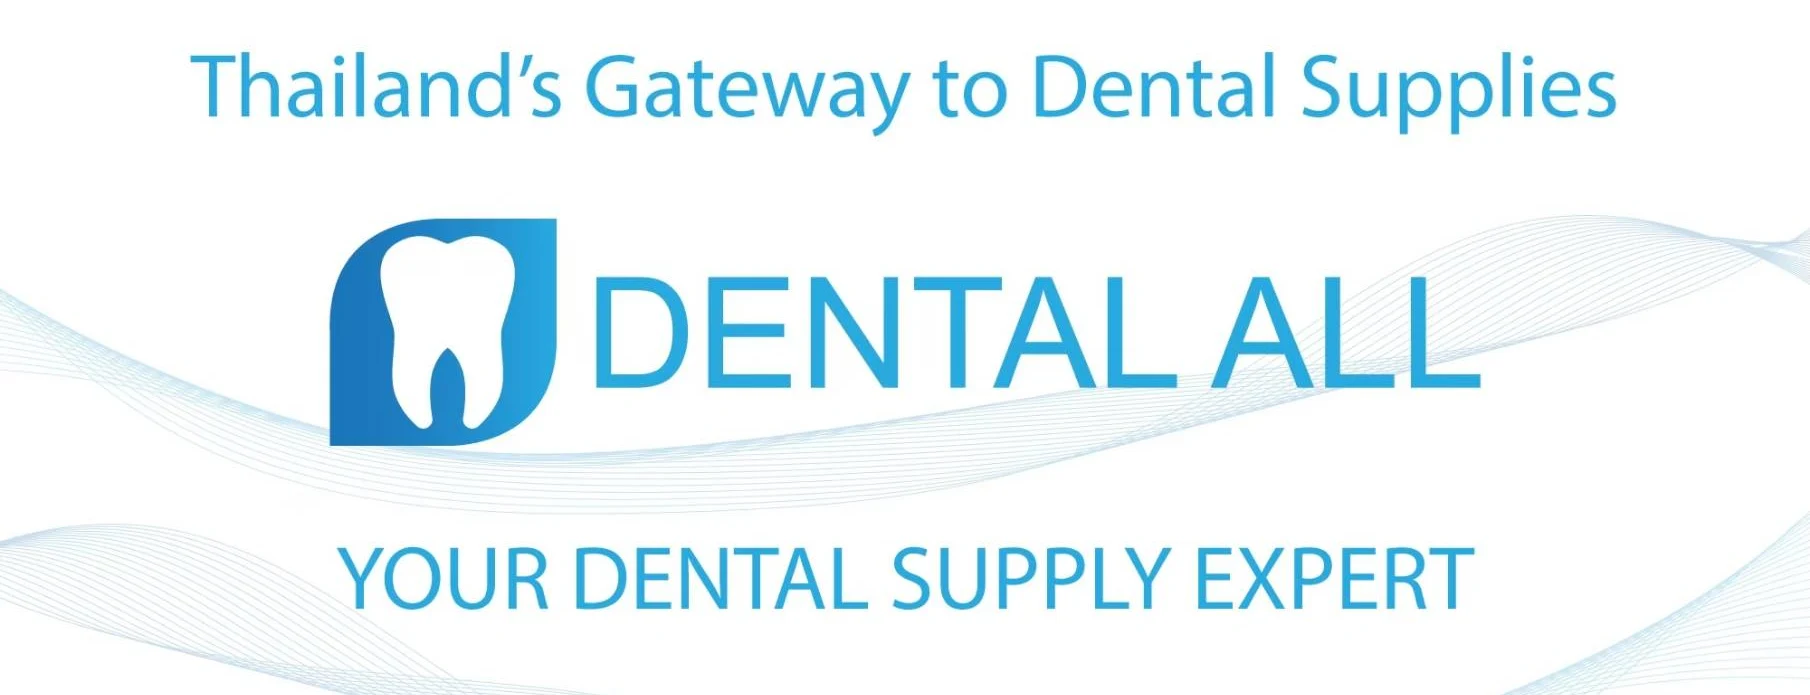 Dental All (Thailand) Co Ltd